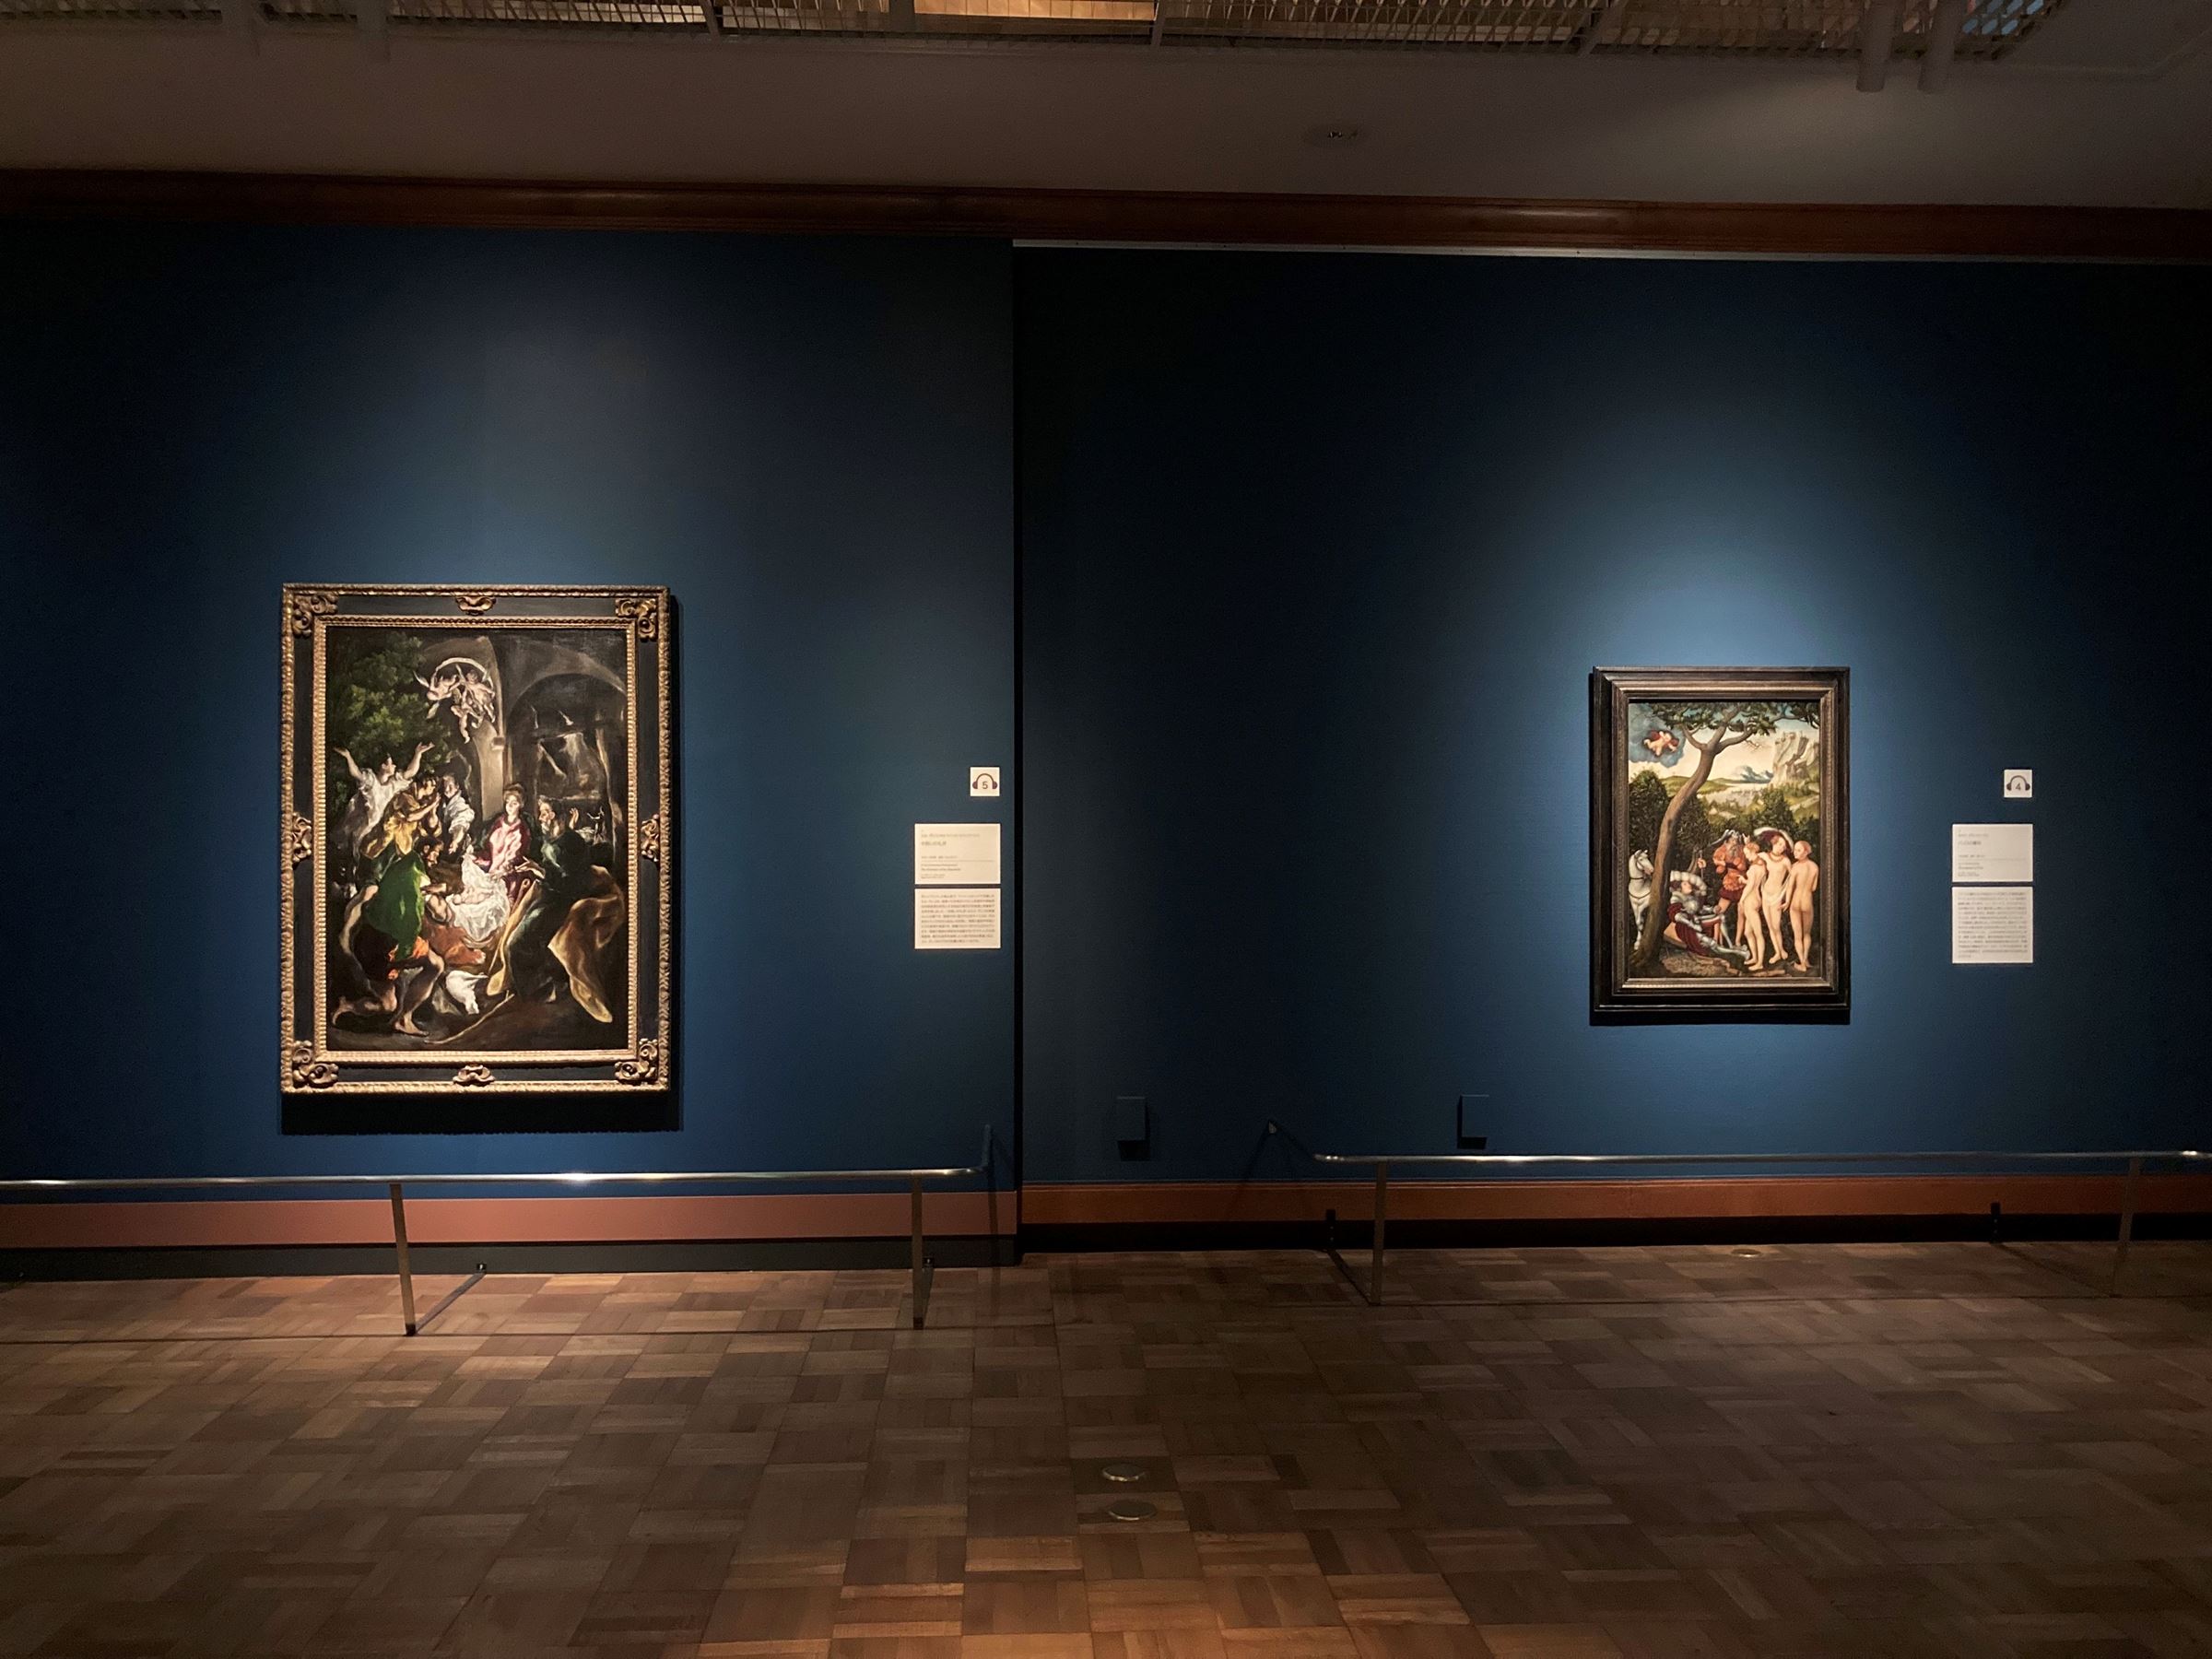 （左）エル・グレコ（本名ドメニコス・テオトコプーロス）《羊飼いの礼拝》1605-10年頃　ニューヨーク、メトロポリタン美術館 Rogers Fund, 1905 / 05.42　（右）ルカス・クラナーハ（父）《パリスの審判》1528年頃　ニューヨーク、メトロポリタン美術館 Rogers Fund, 1928 / 28.221